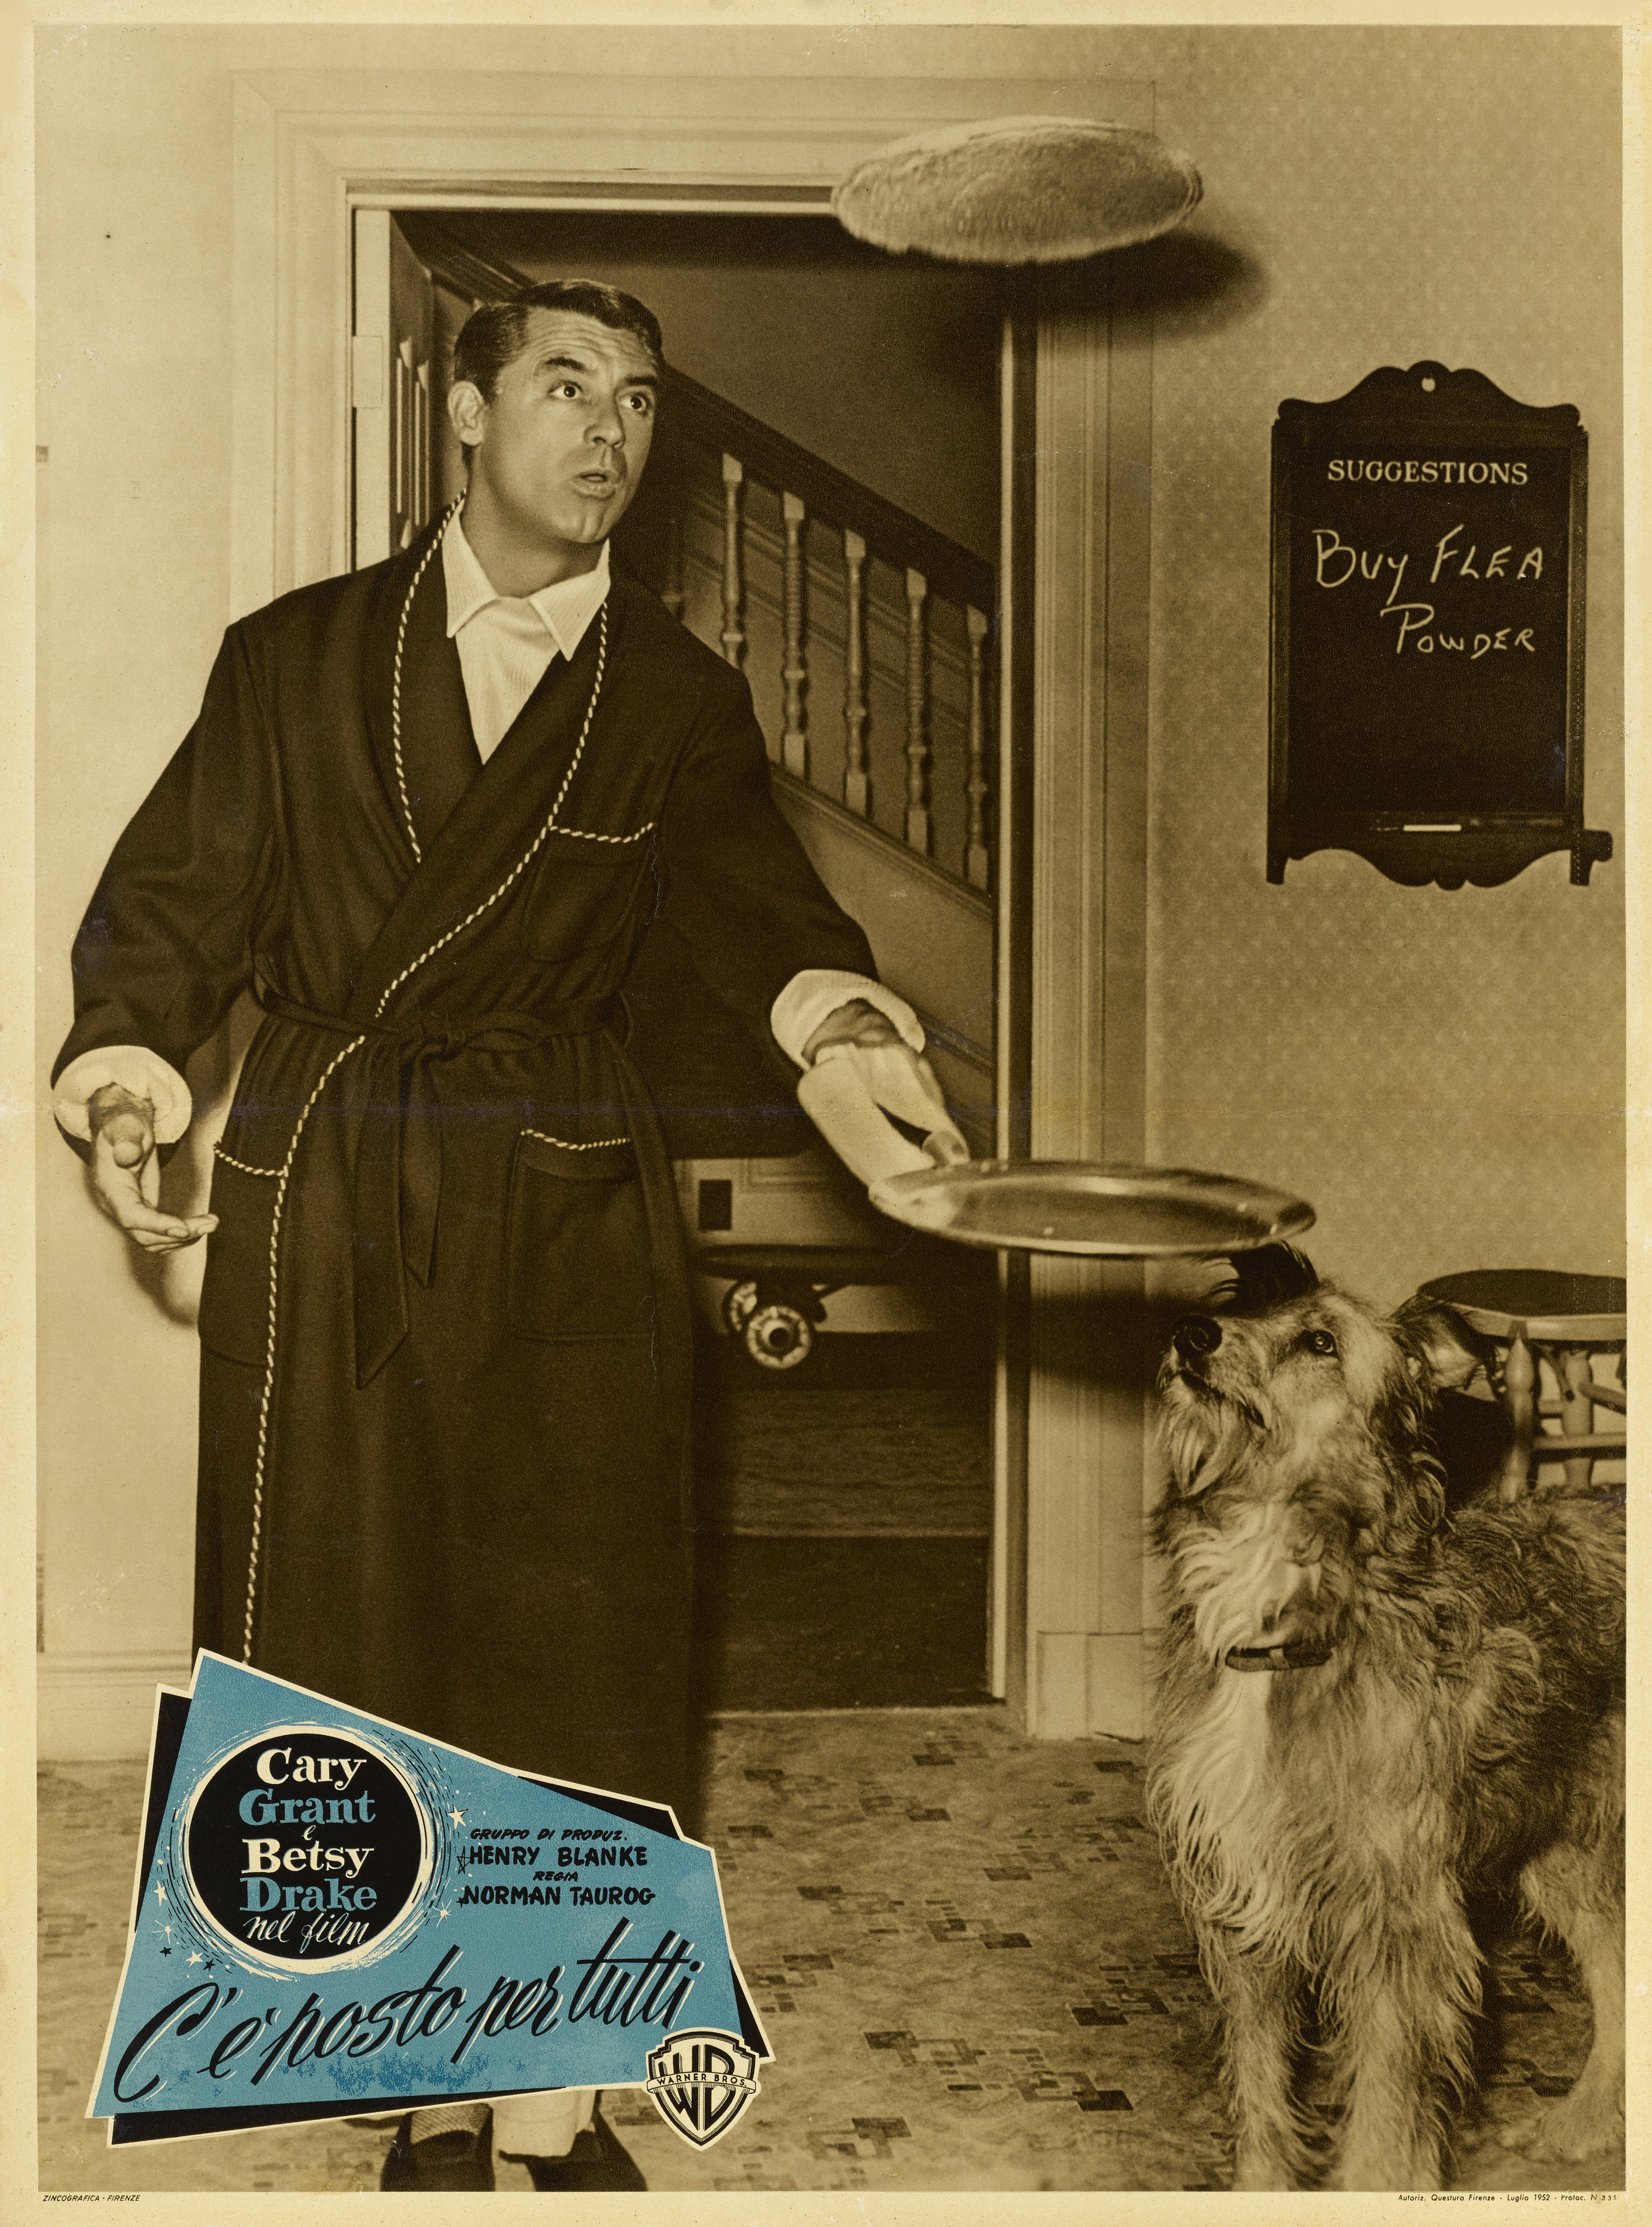 Originales italienisches Filmplakat für Room for One More 1952.

Diese Komödie wurde von Norman Taurog inszeniert und mit Cary Grant und Betsy Drake in den Hauptrollen gedreht.
Das Plakat ist in ausgezeichnetem Zustand, mit nur einer kleinen